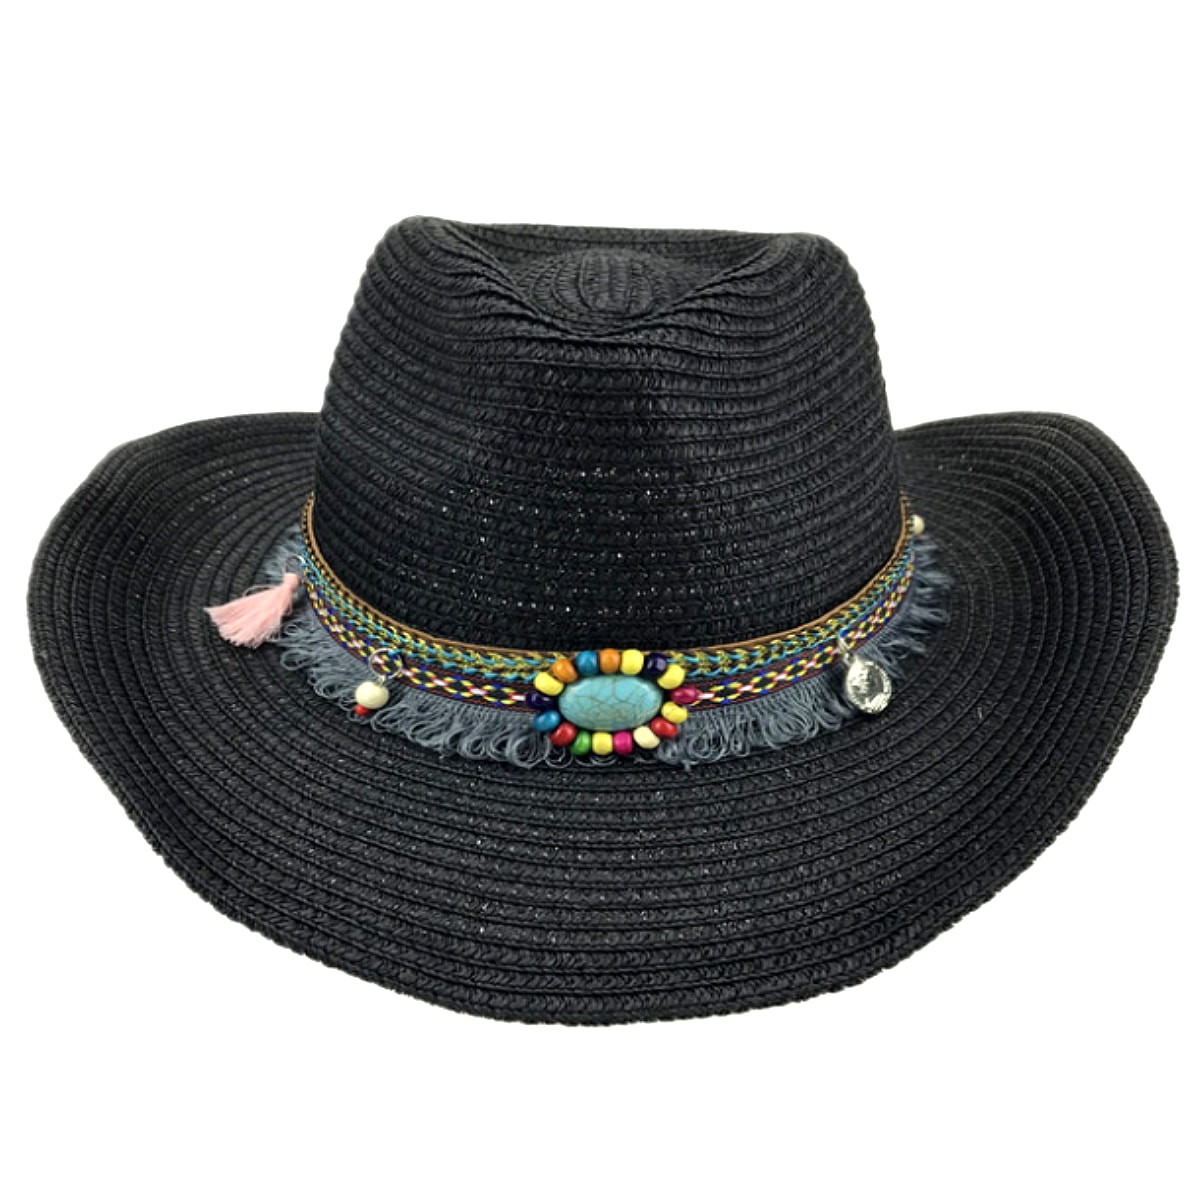 テンガロンハット 全4色! [Bohemian Decorative Belt Western Cowboy Hat] ボヘミアン・デコラティブ・ベルト・ウェスタン・カウボーイハット! 帽子 テンガロンハット ストローハット 麦わら帽子 つば広 サンキャップ シンプル 日焼け防止 男女兼用 バイクに! バイカー